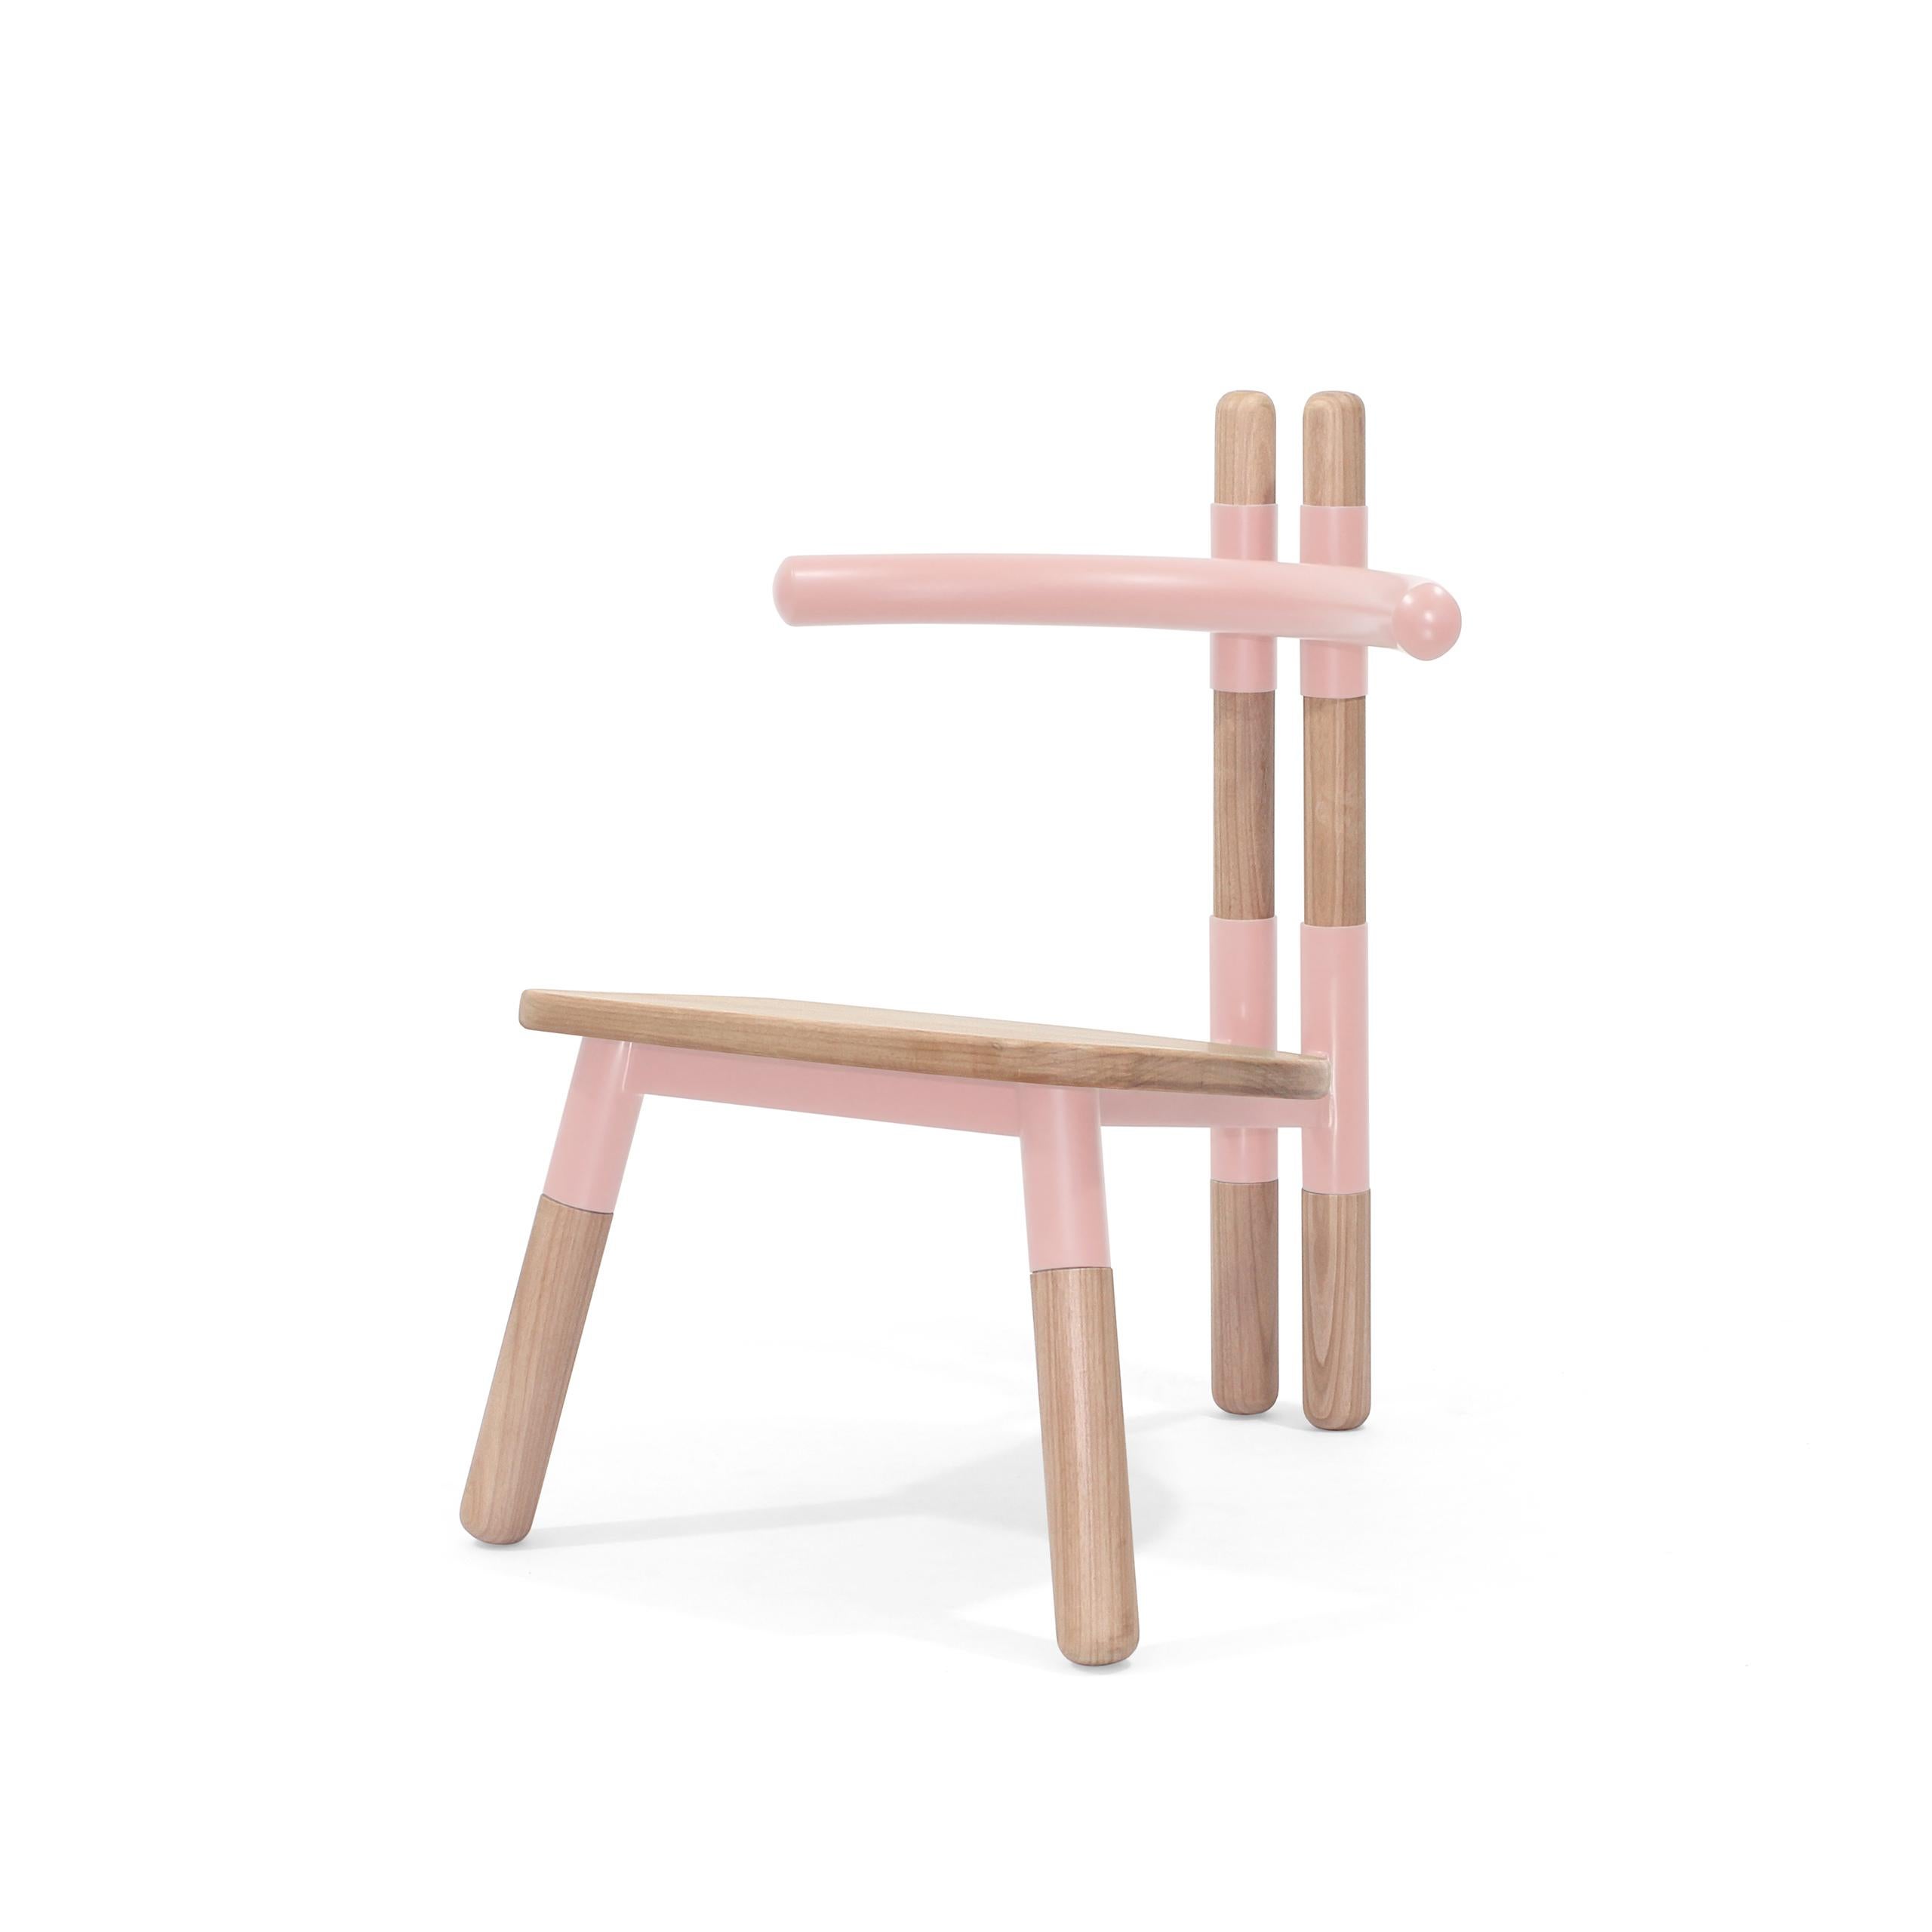 Le fauteuil PK13 s'inspire des fermes en bois utilisées dans la construction des toits.
Les douilles de chaise font référence à la 